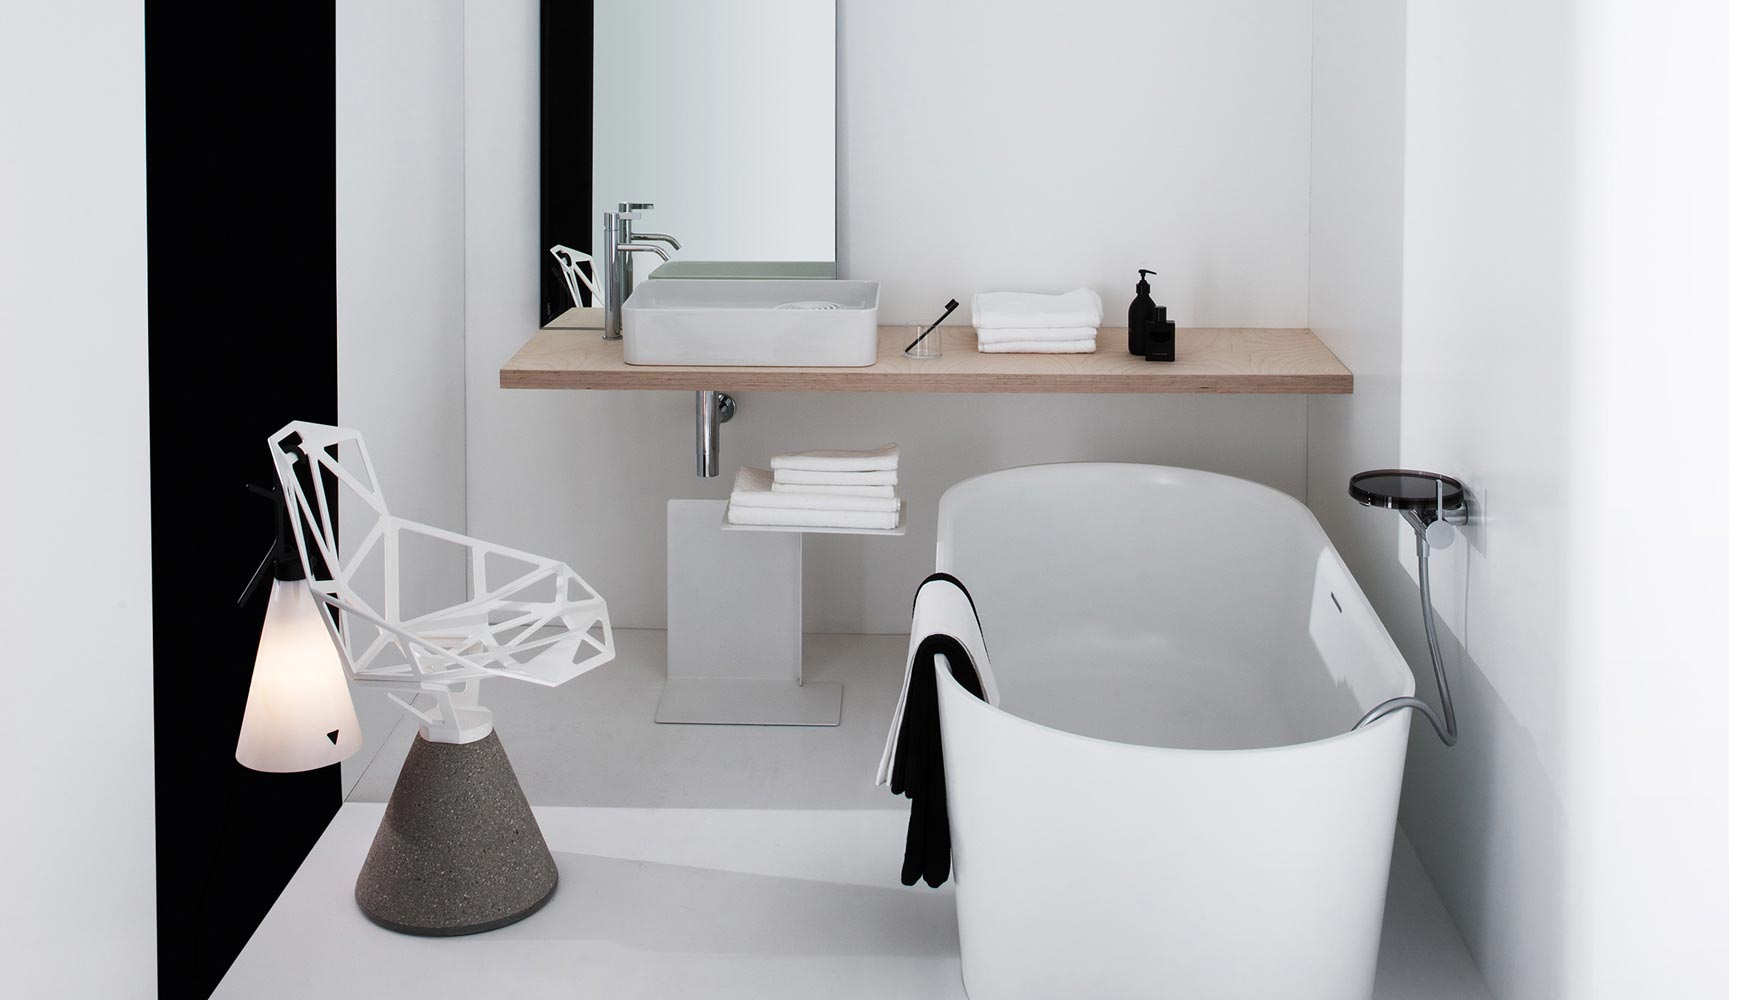 El proyecto se basa en el diseo de lavabos con superficies funcionalmente decorativas